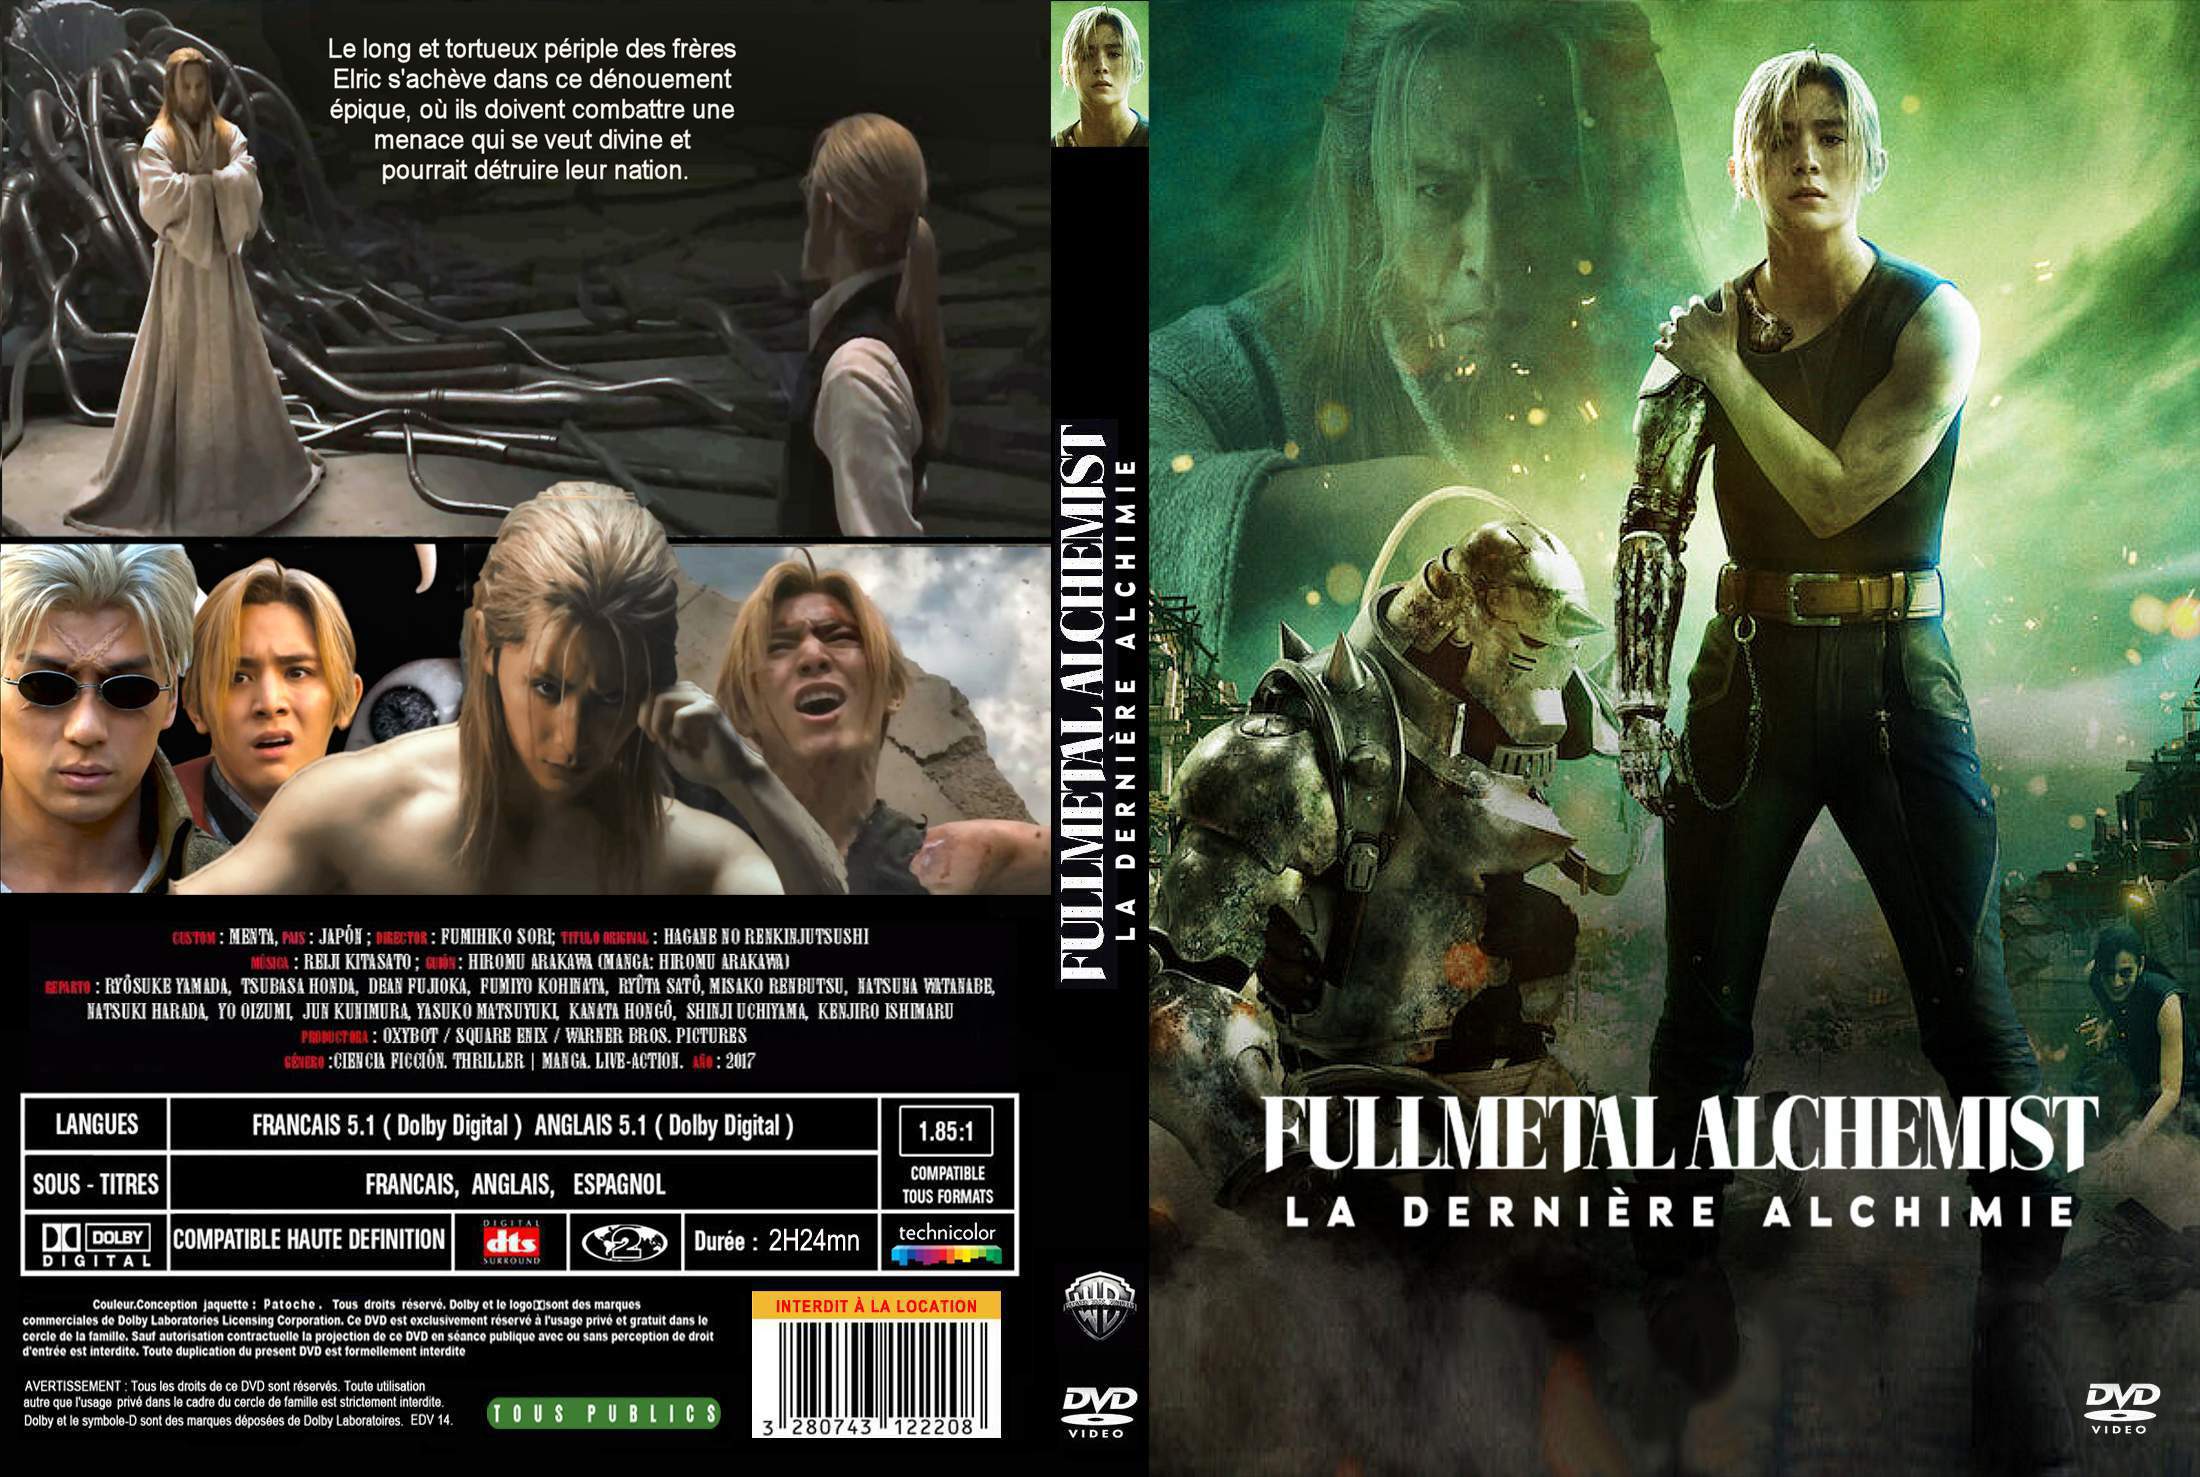 Jaquette DVD Fullmetal alchemist 3 custom